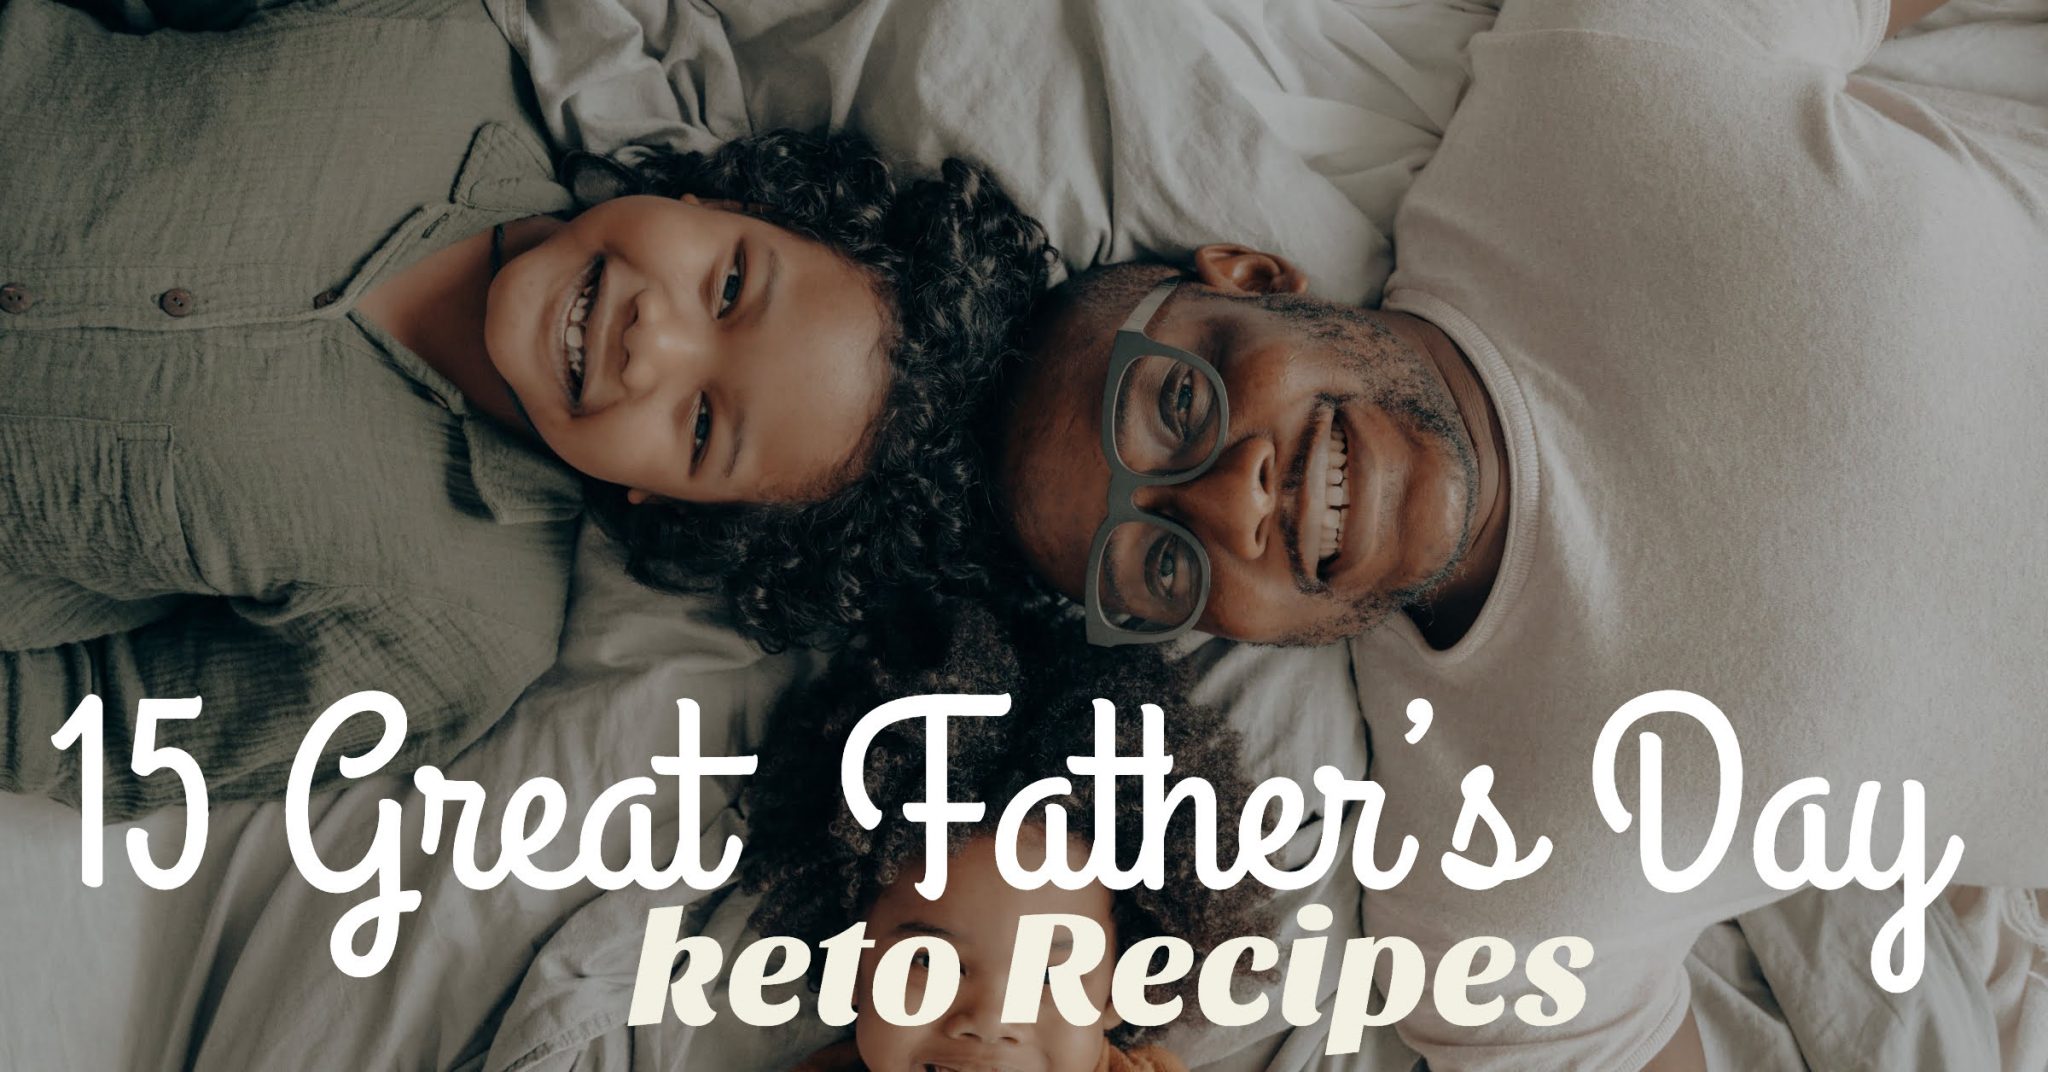  Keto Dad Recipes